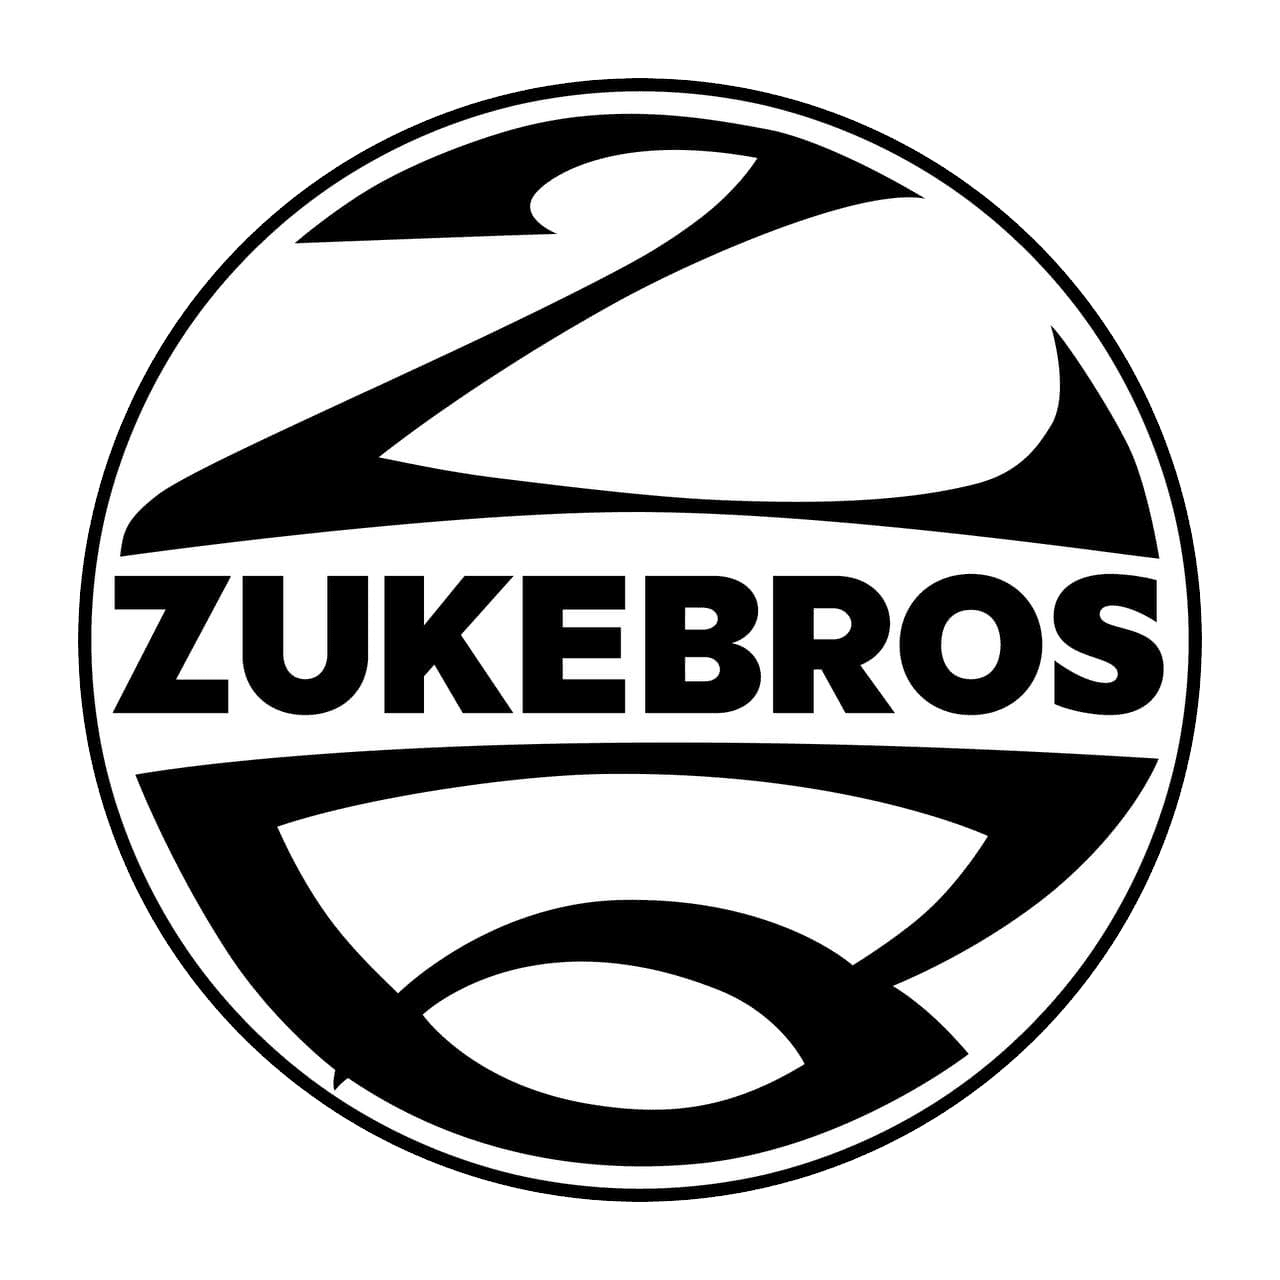 ZukeBrothers